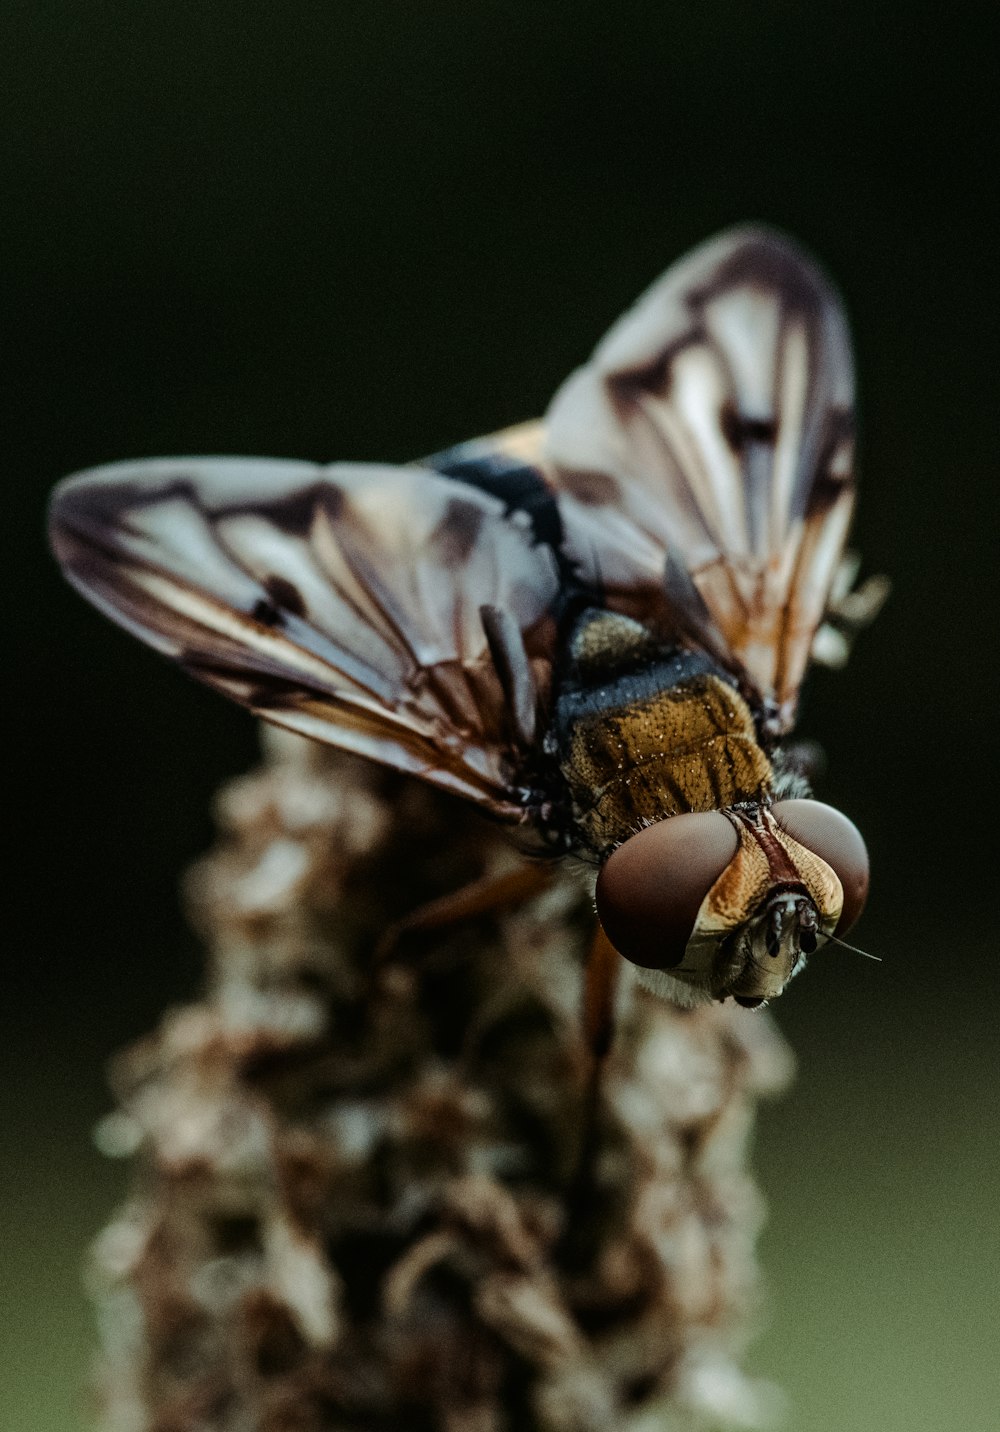 ape marrone e nera sul gambo della pianta marrone nella fotografia ravvicinata durante il giorno